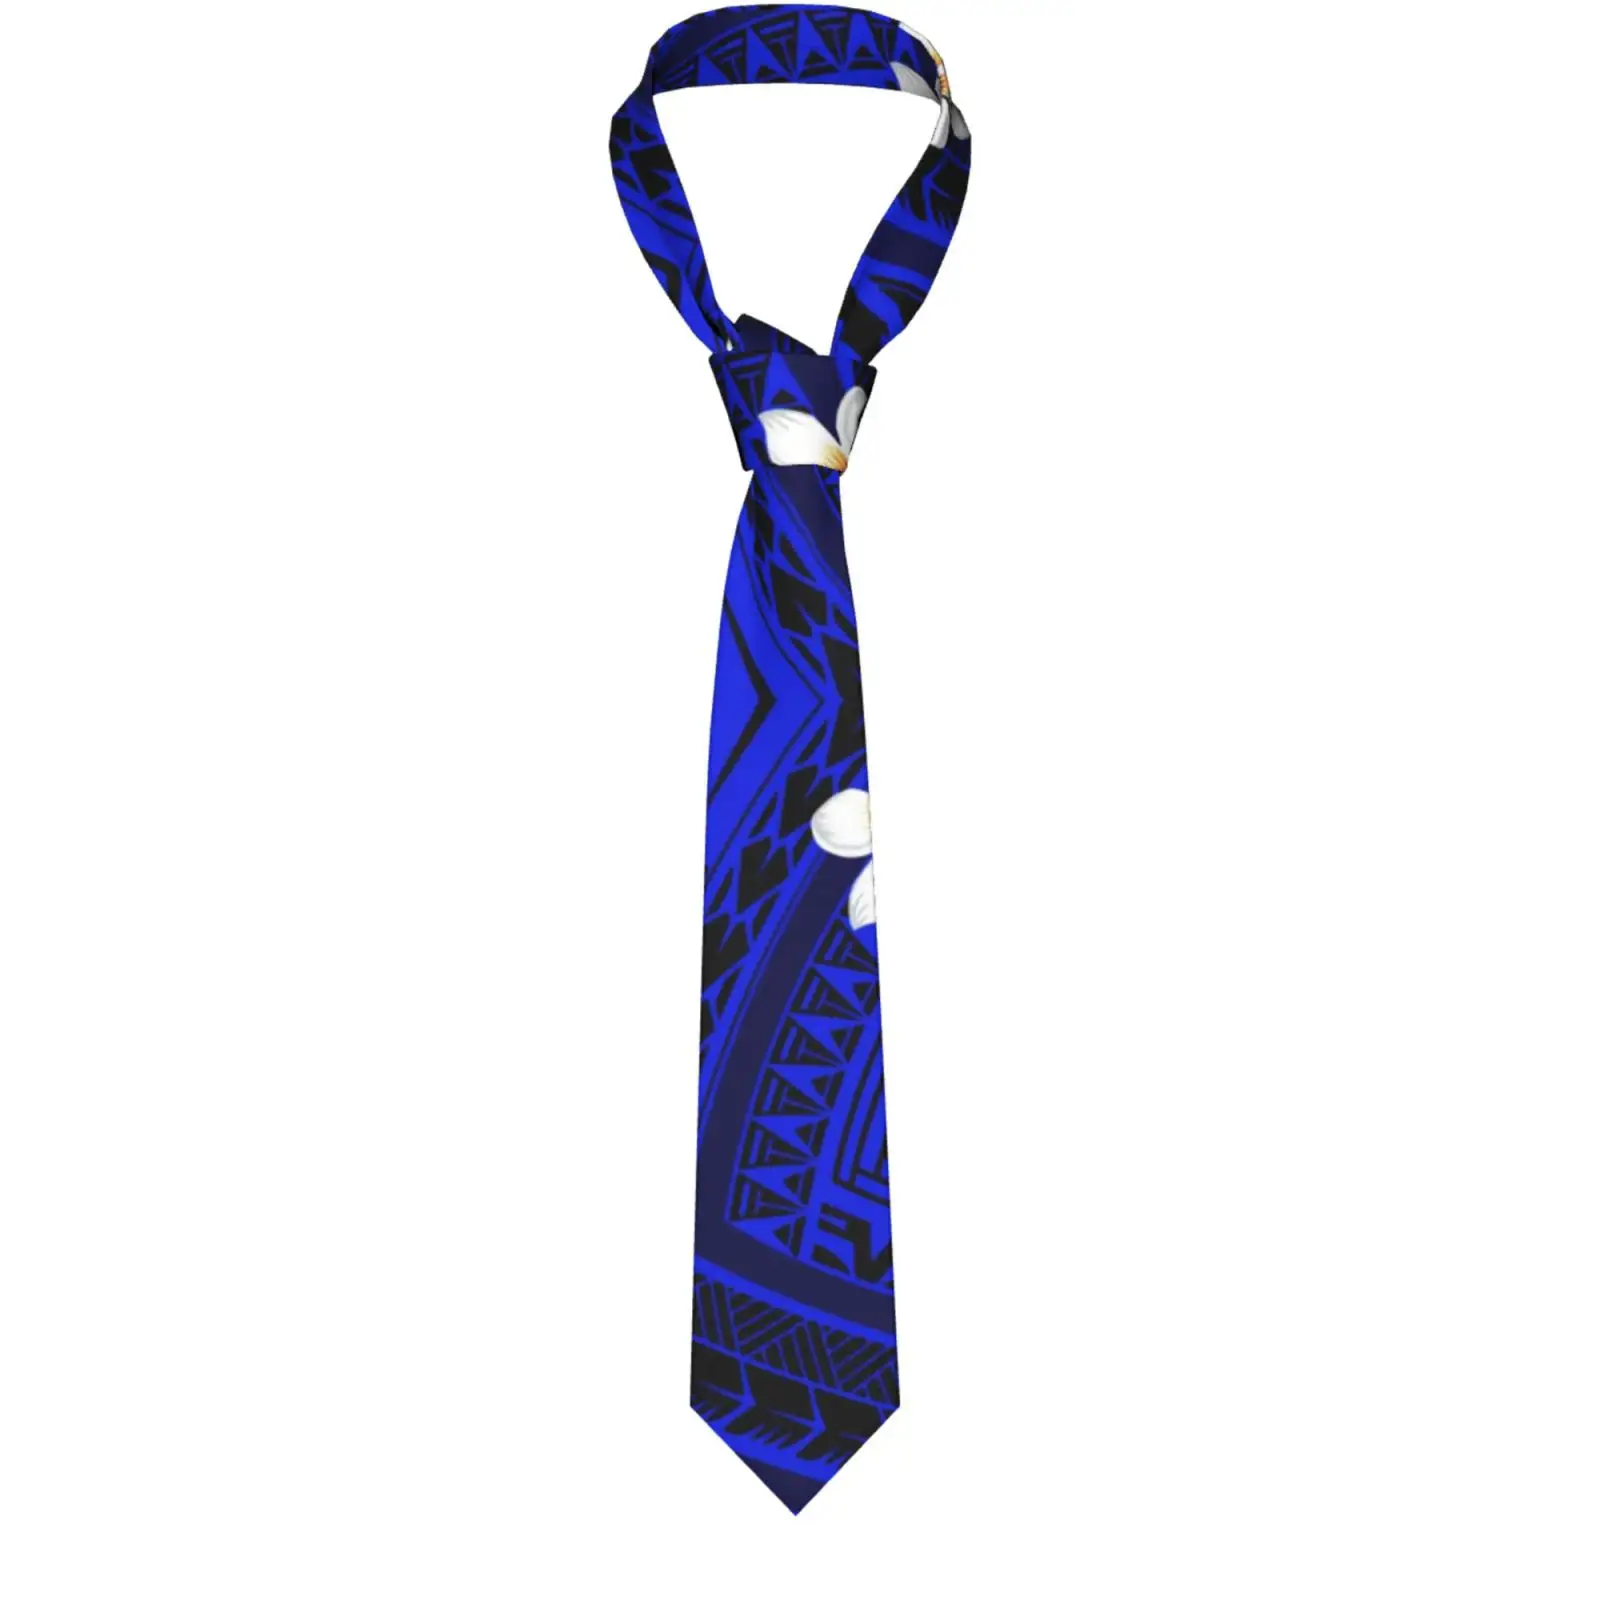 Polinezya özel tasarım sıcak ucuz moda aksesuarları zarif erkek şerit kravat promosyon hediye boyun bağları